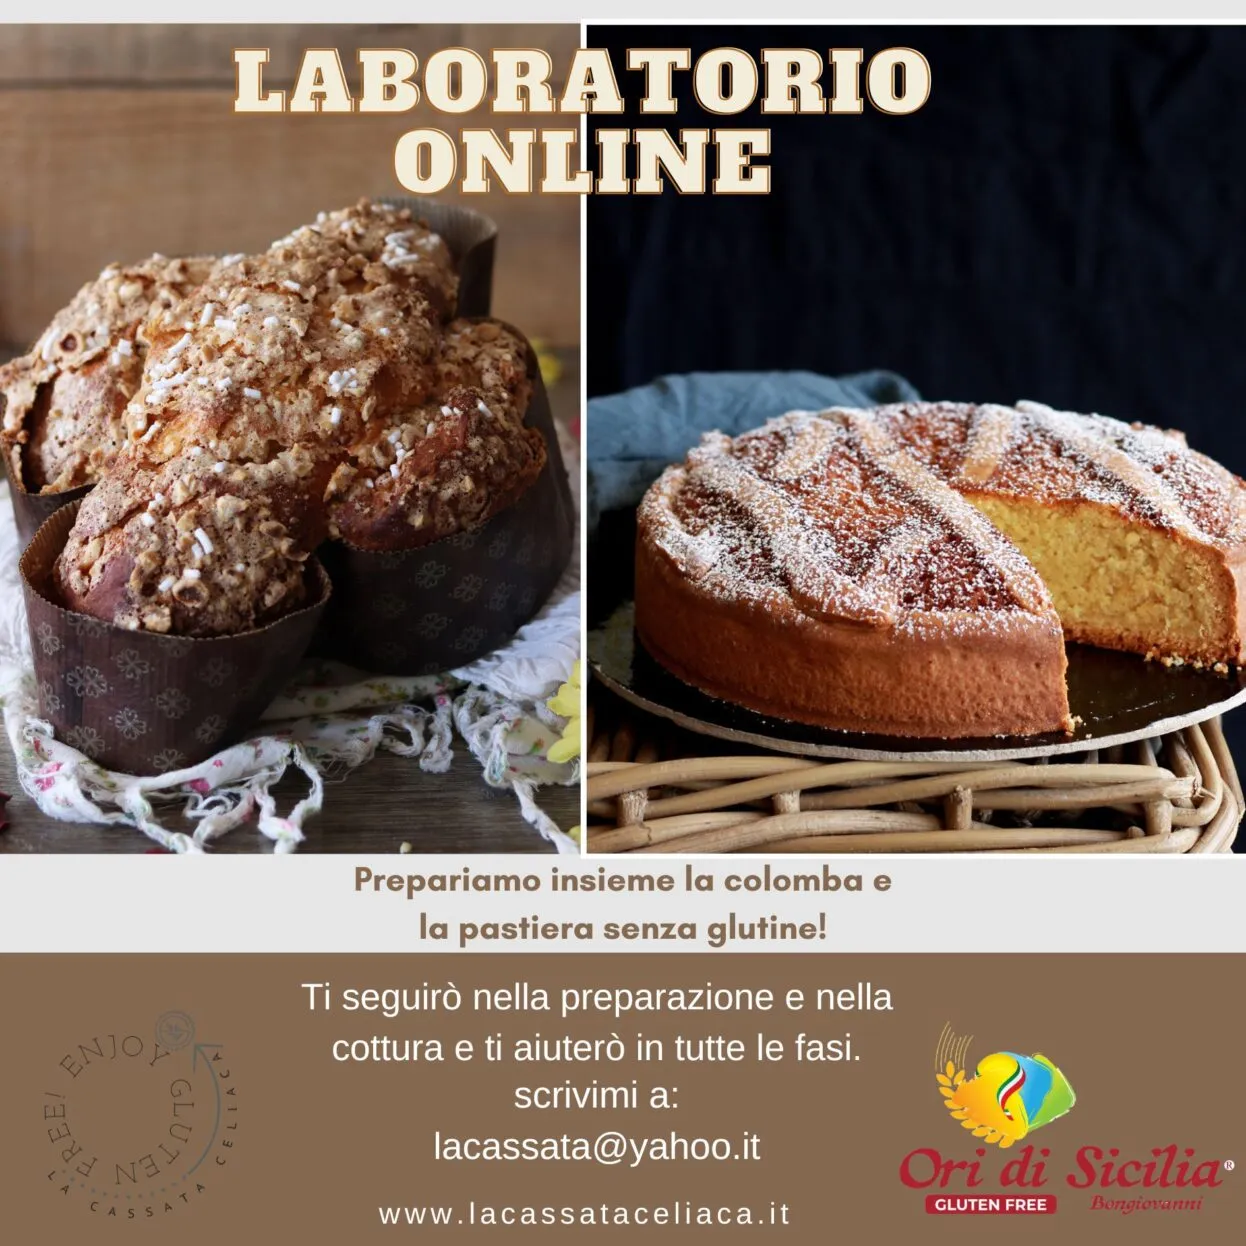 Laboratorio online di Colomba e Pastiera senza glutine INDIVIDUALE